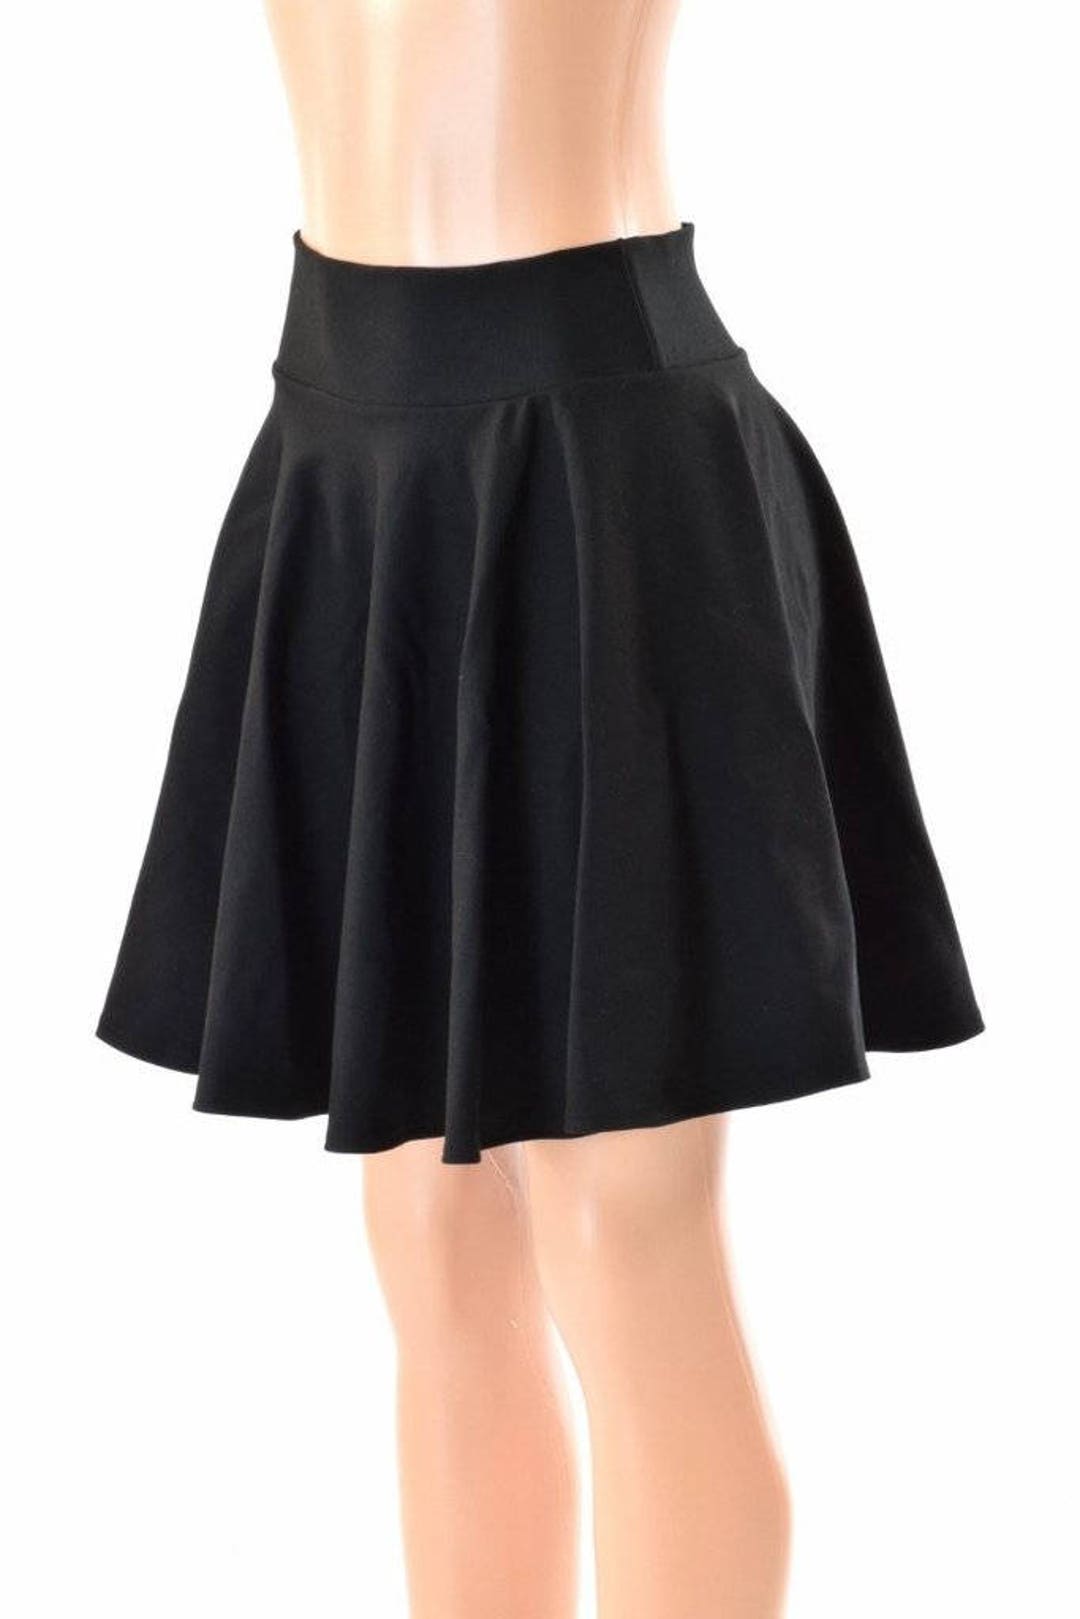 19 Black Zen Soft Knit Skater Skirt 152477 - Etsy